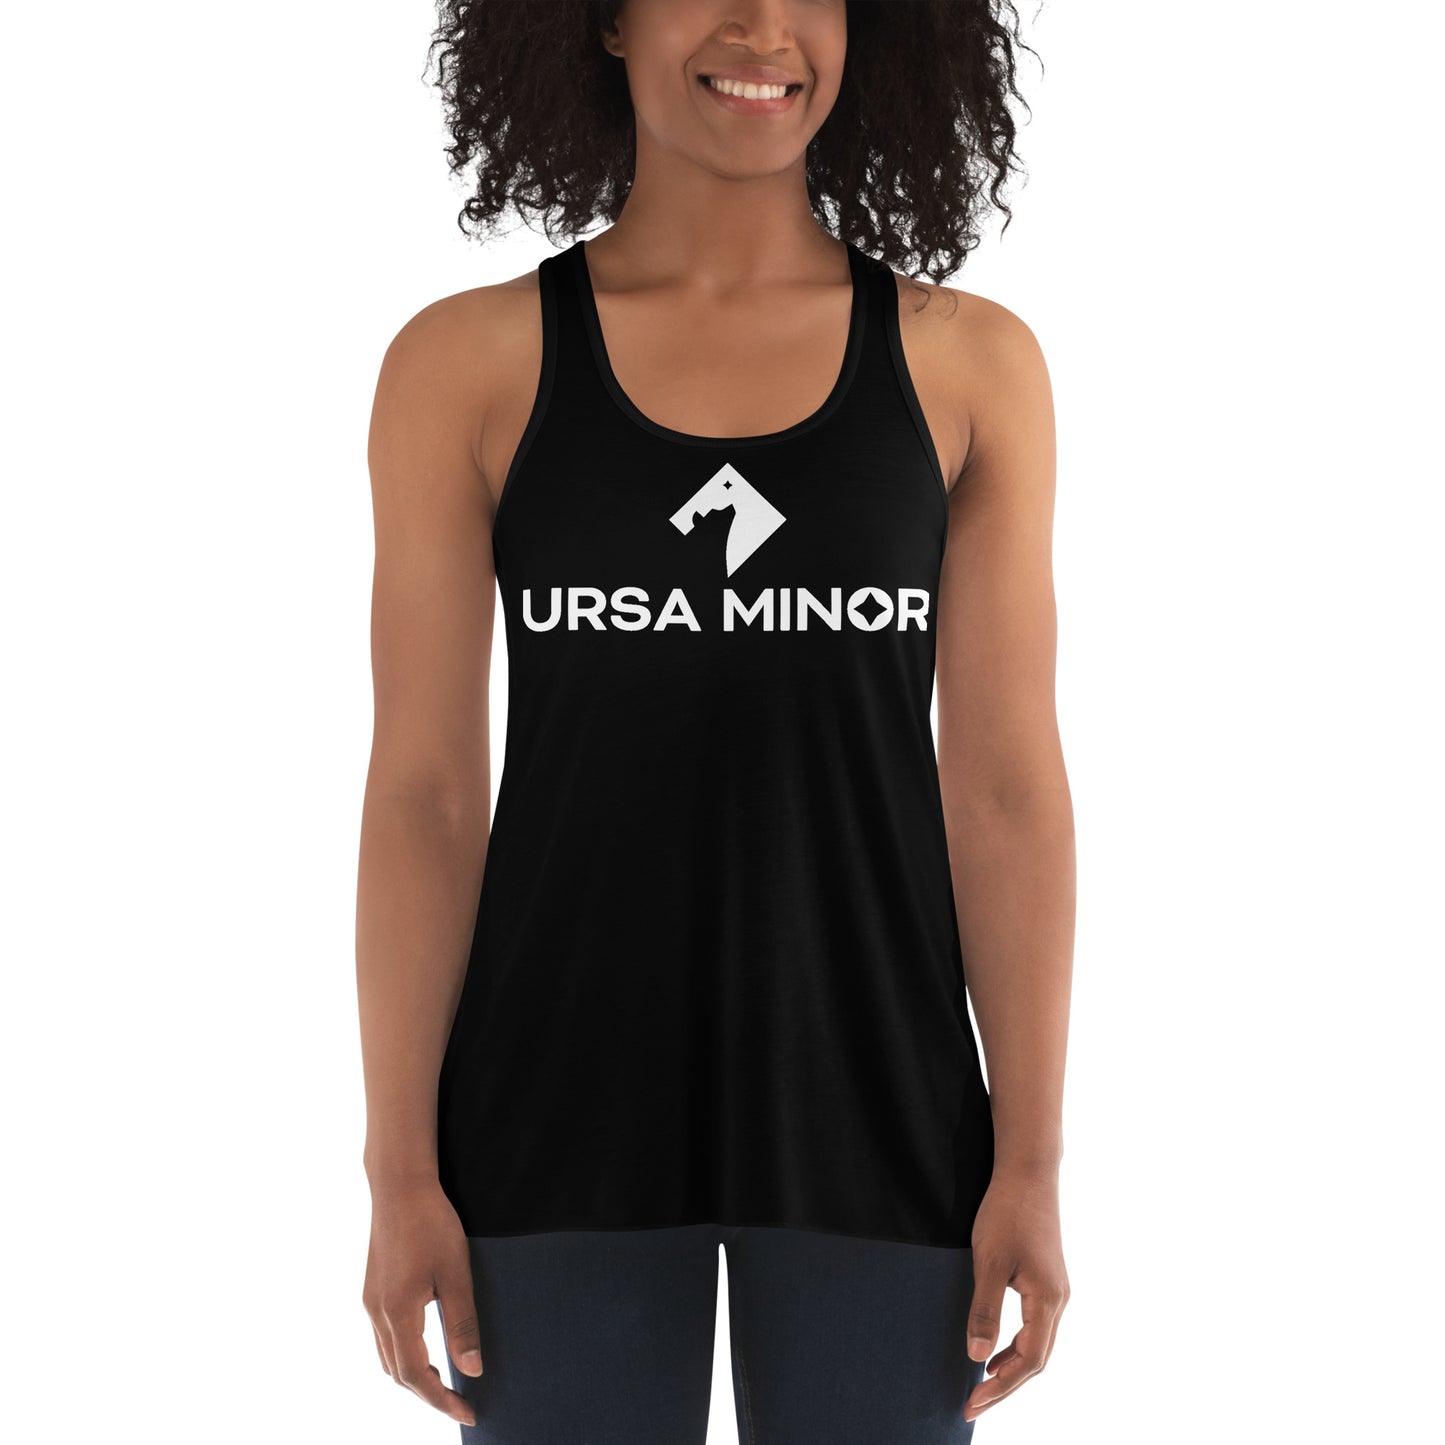 Ursa Minor - Women's Flowy Racerback Tank